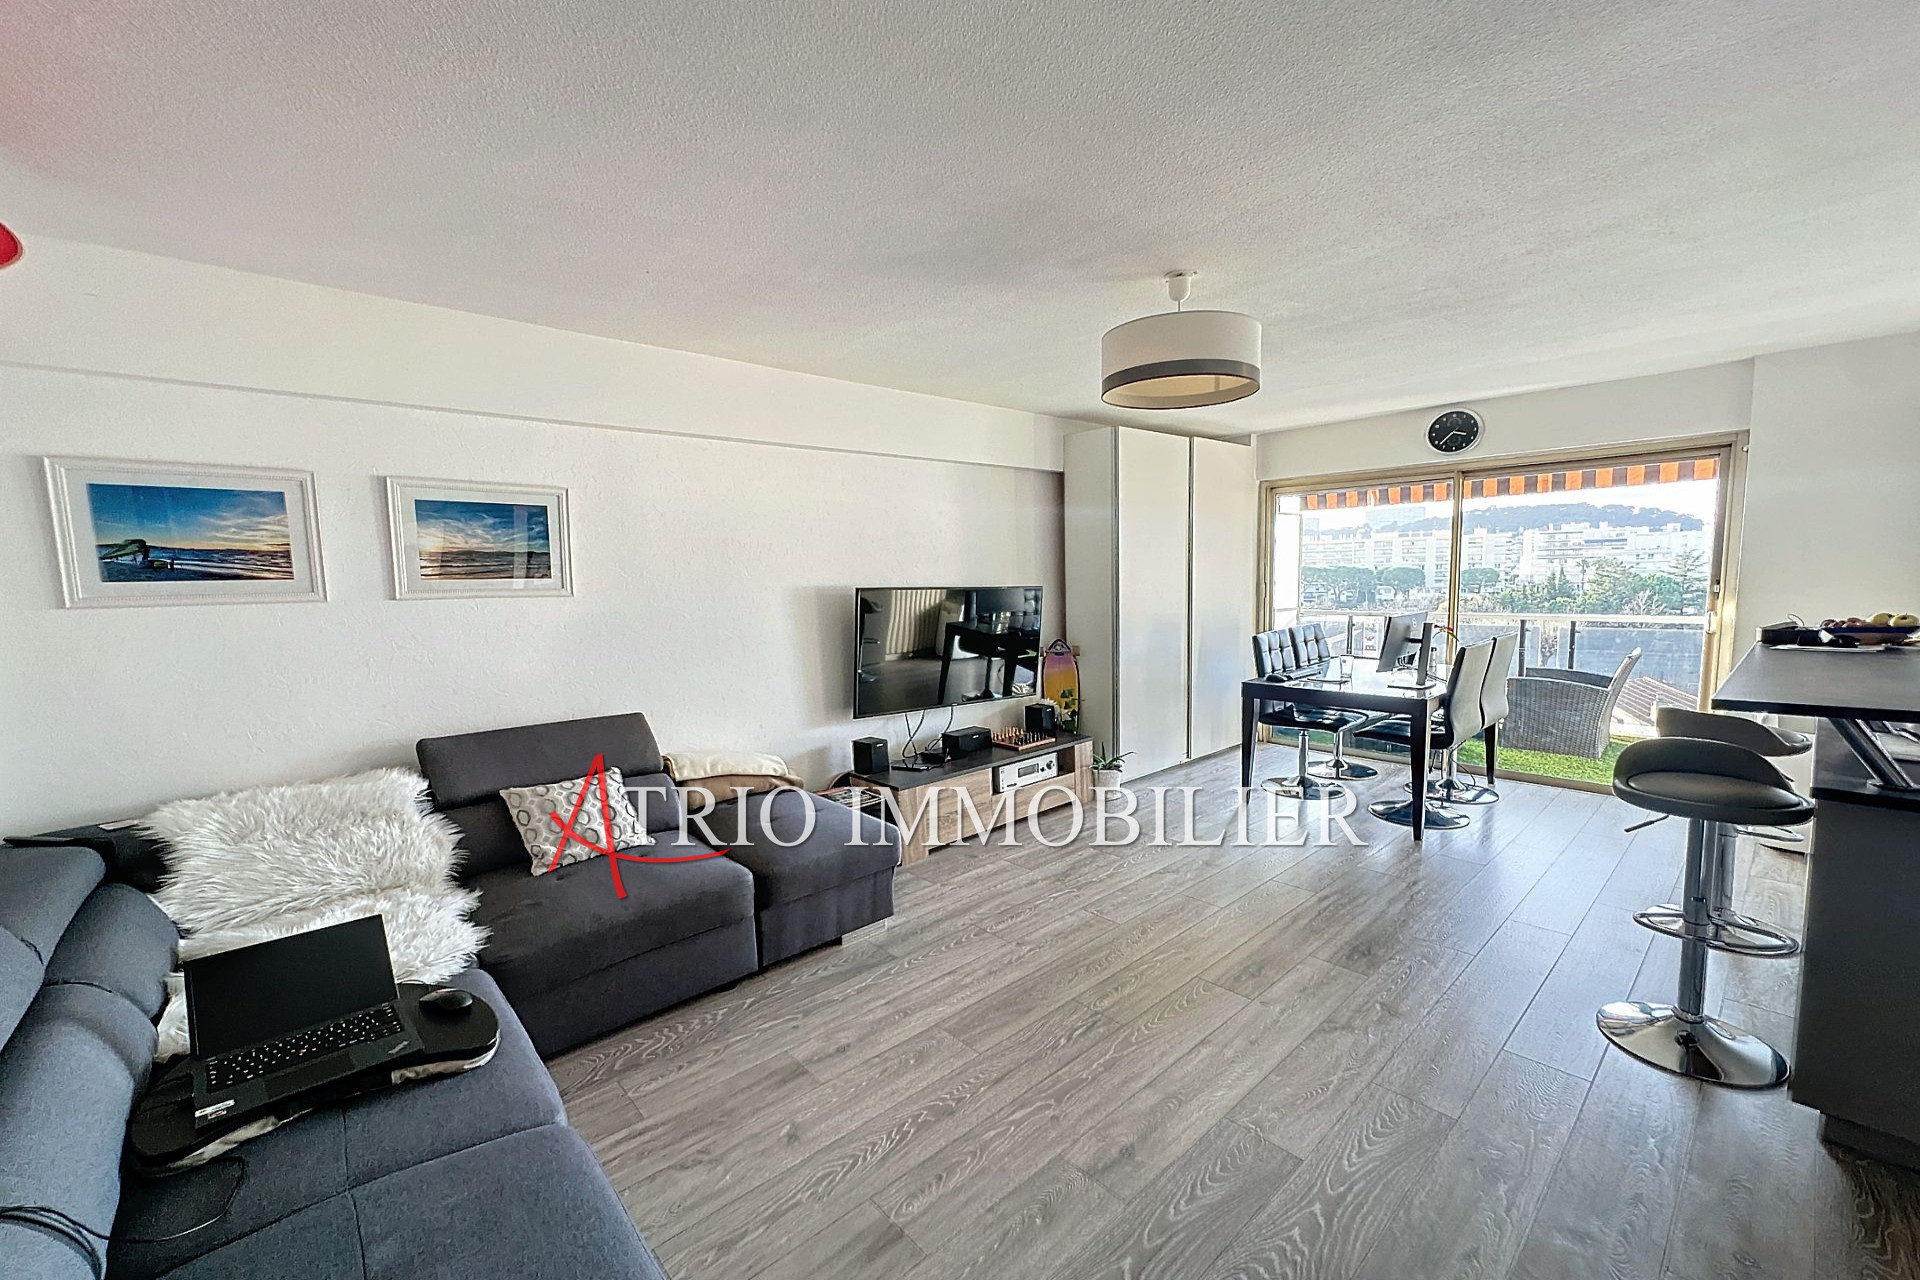 Vente Appartement 75m² à Cagnes-sur-Mer (06800) - Atrio Immobilier